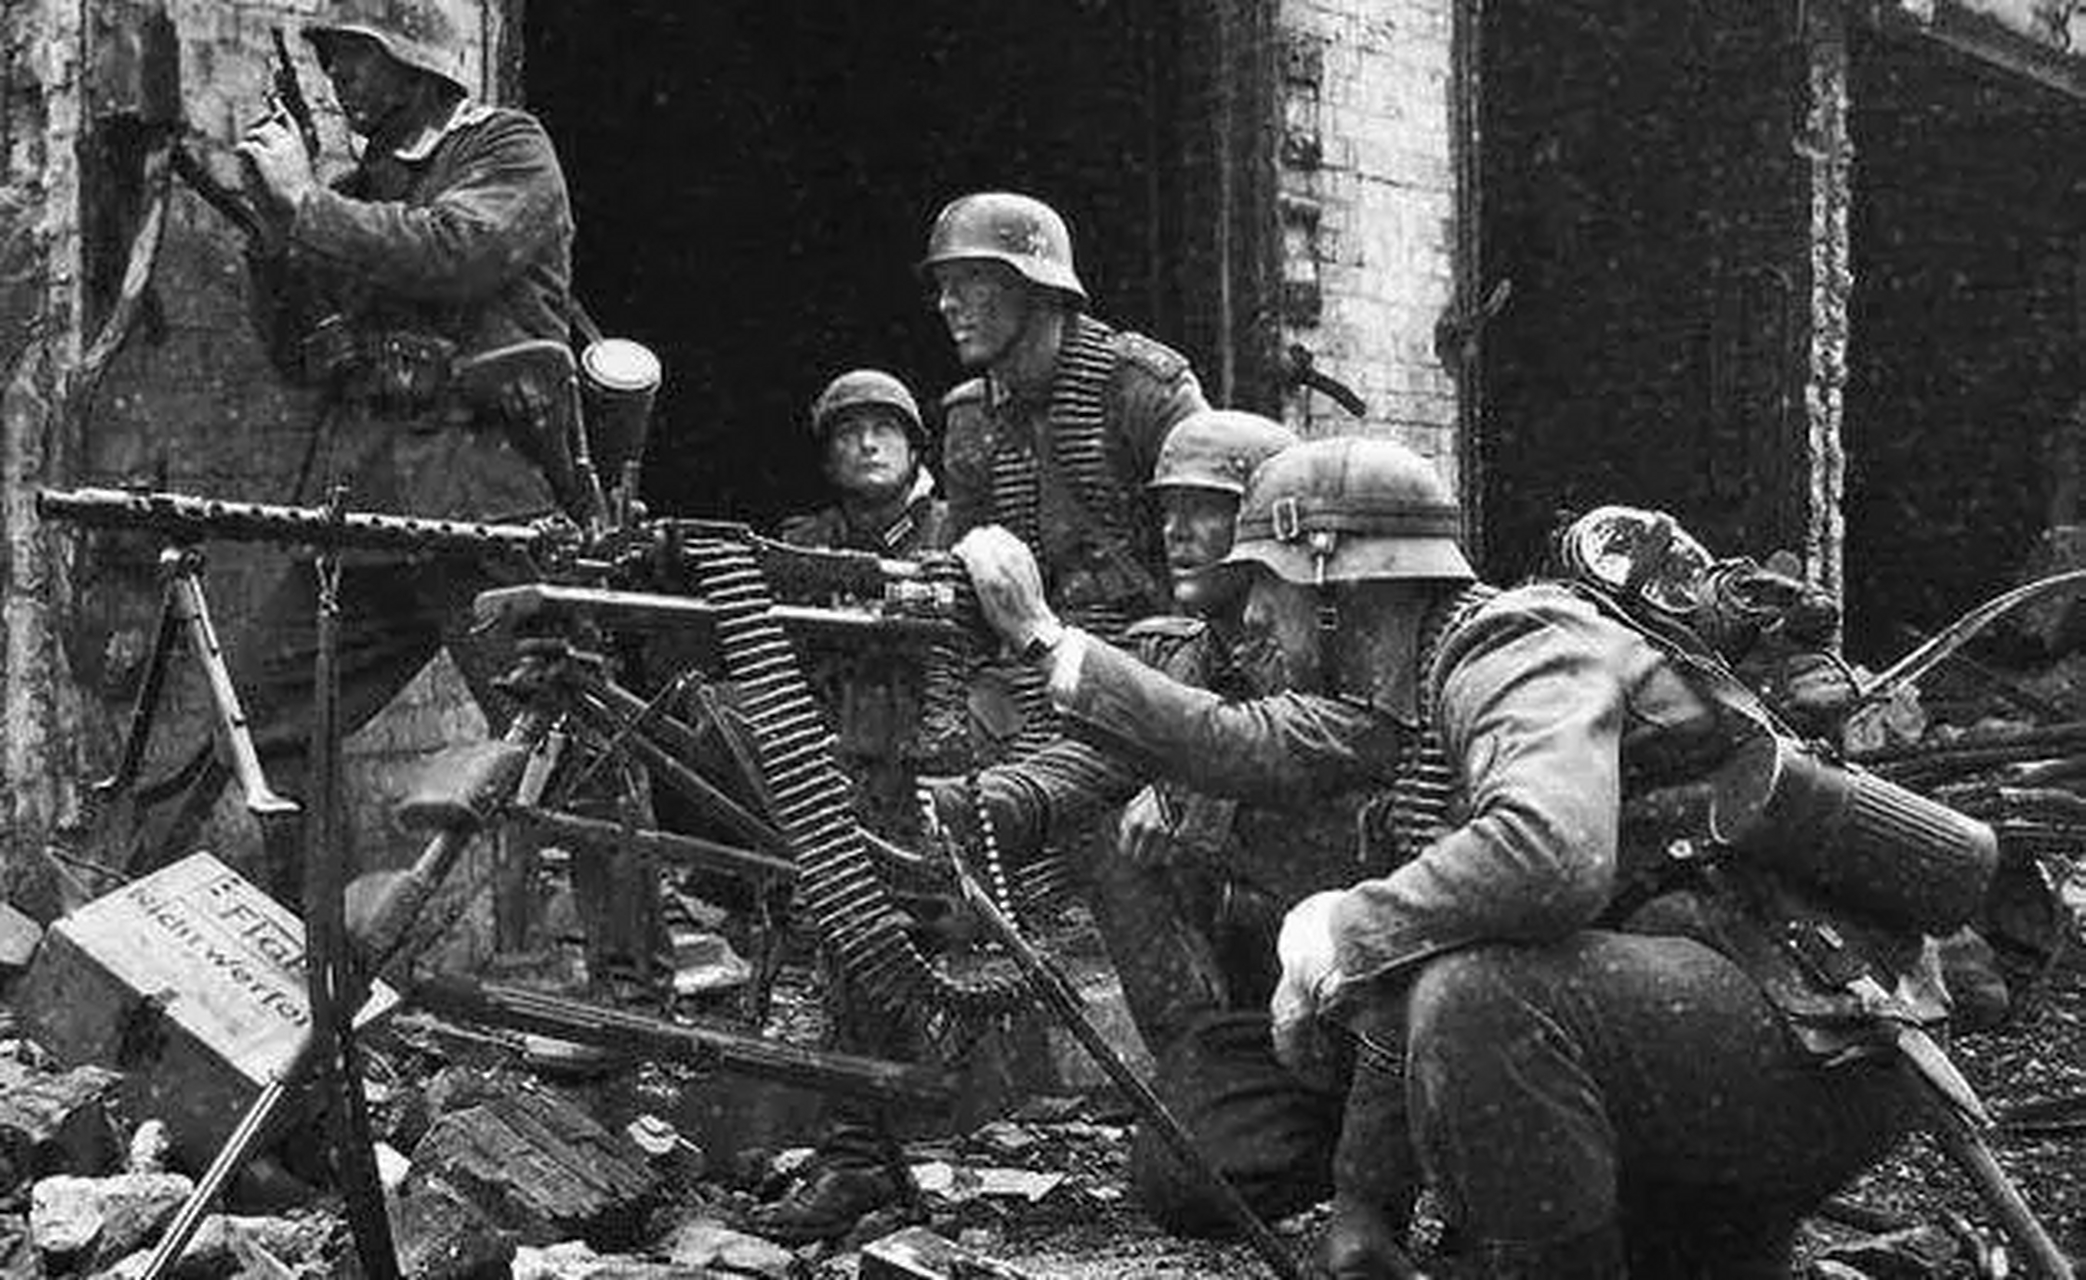 二战时期苏德双方各自提升战力的方法:德军嗑药,苏军喝伏特加 1919年